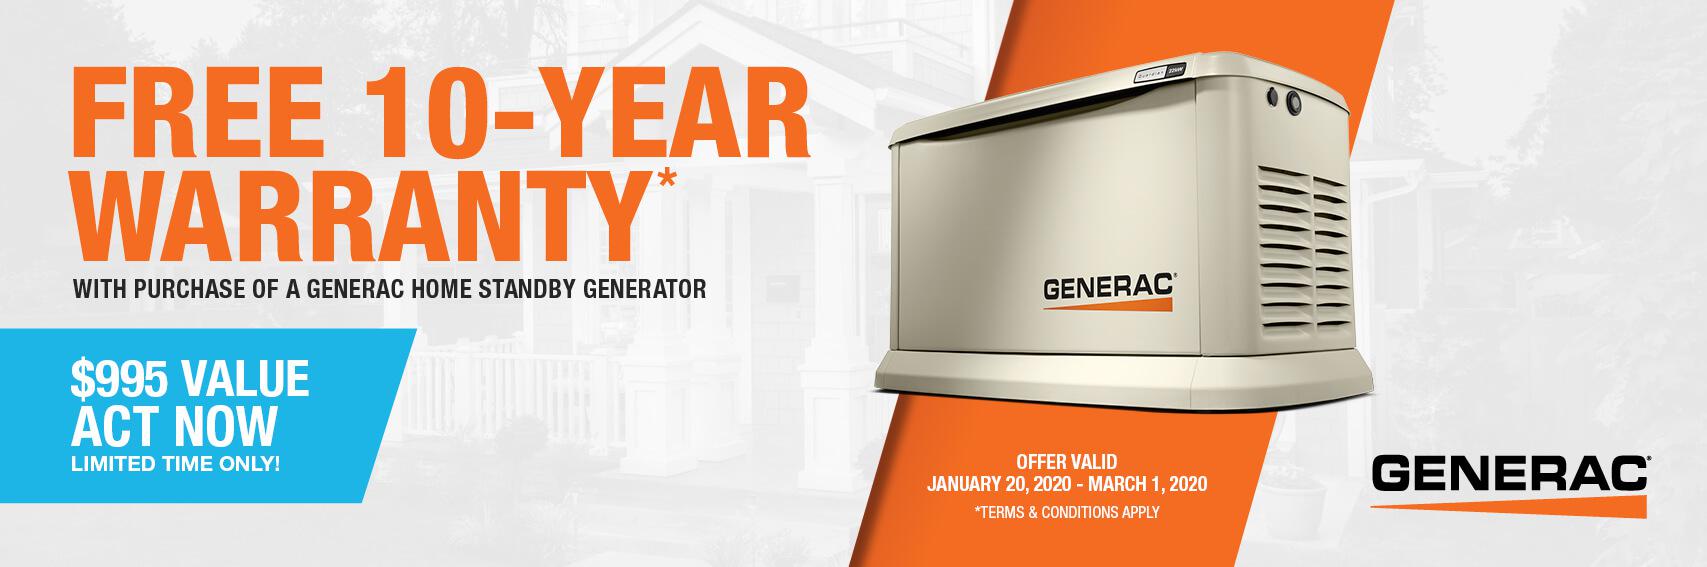 Homestandby Generator Deal | Warranty Offer | Generac Dealer | CARLISLE, PA